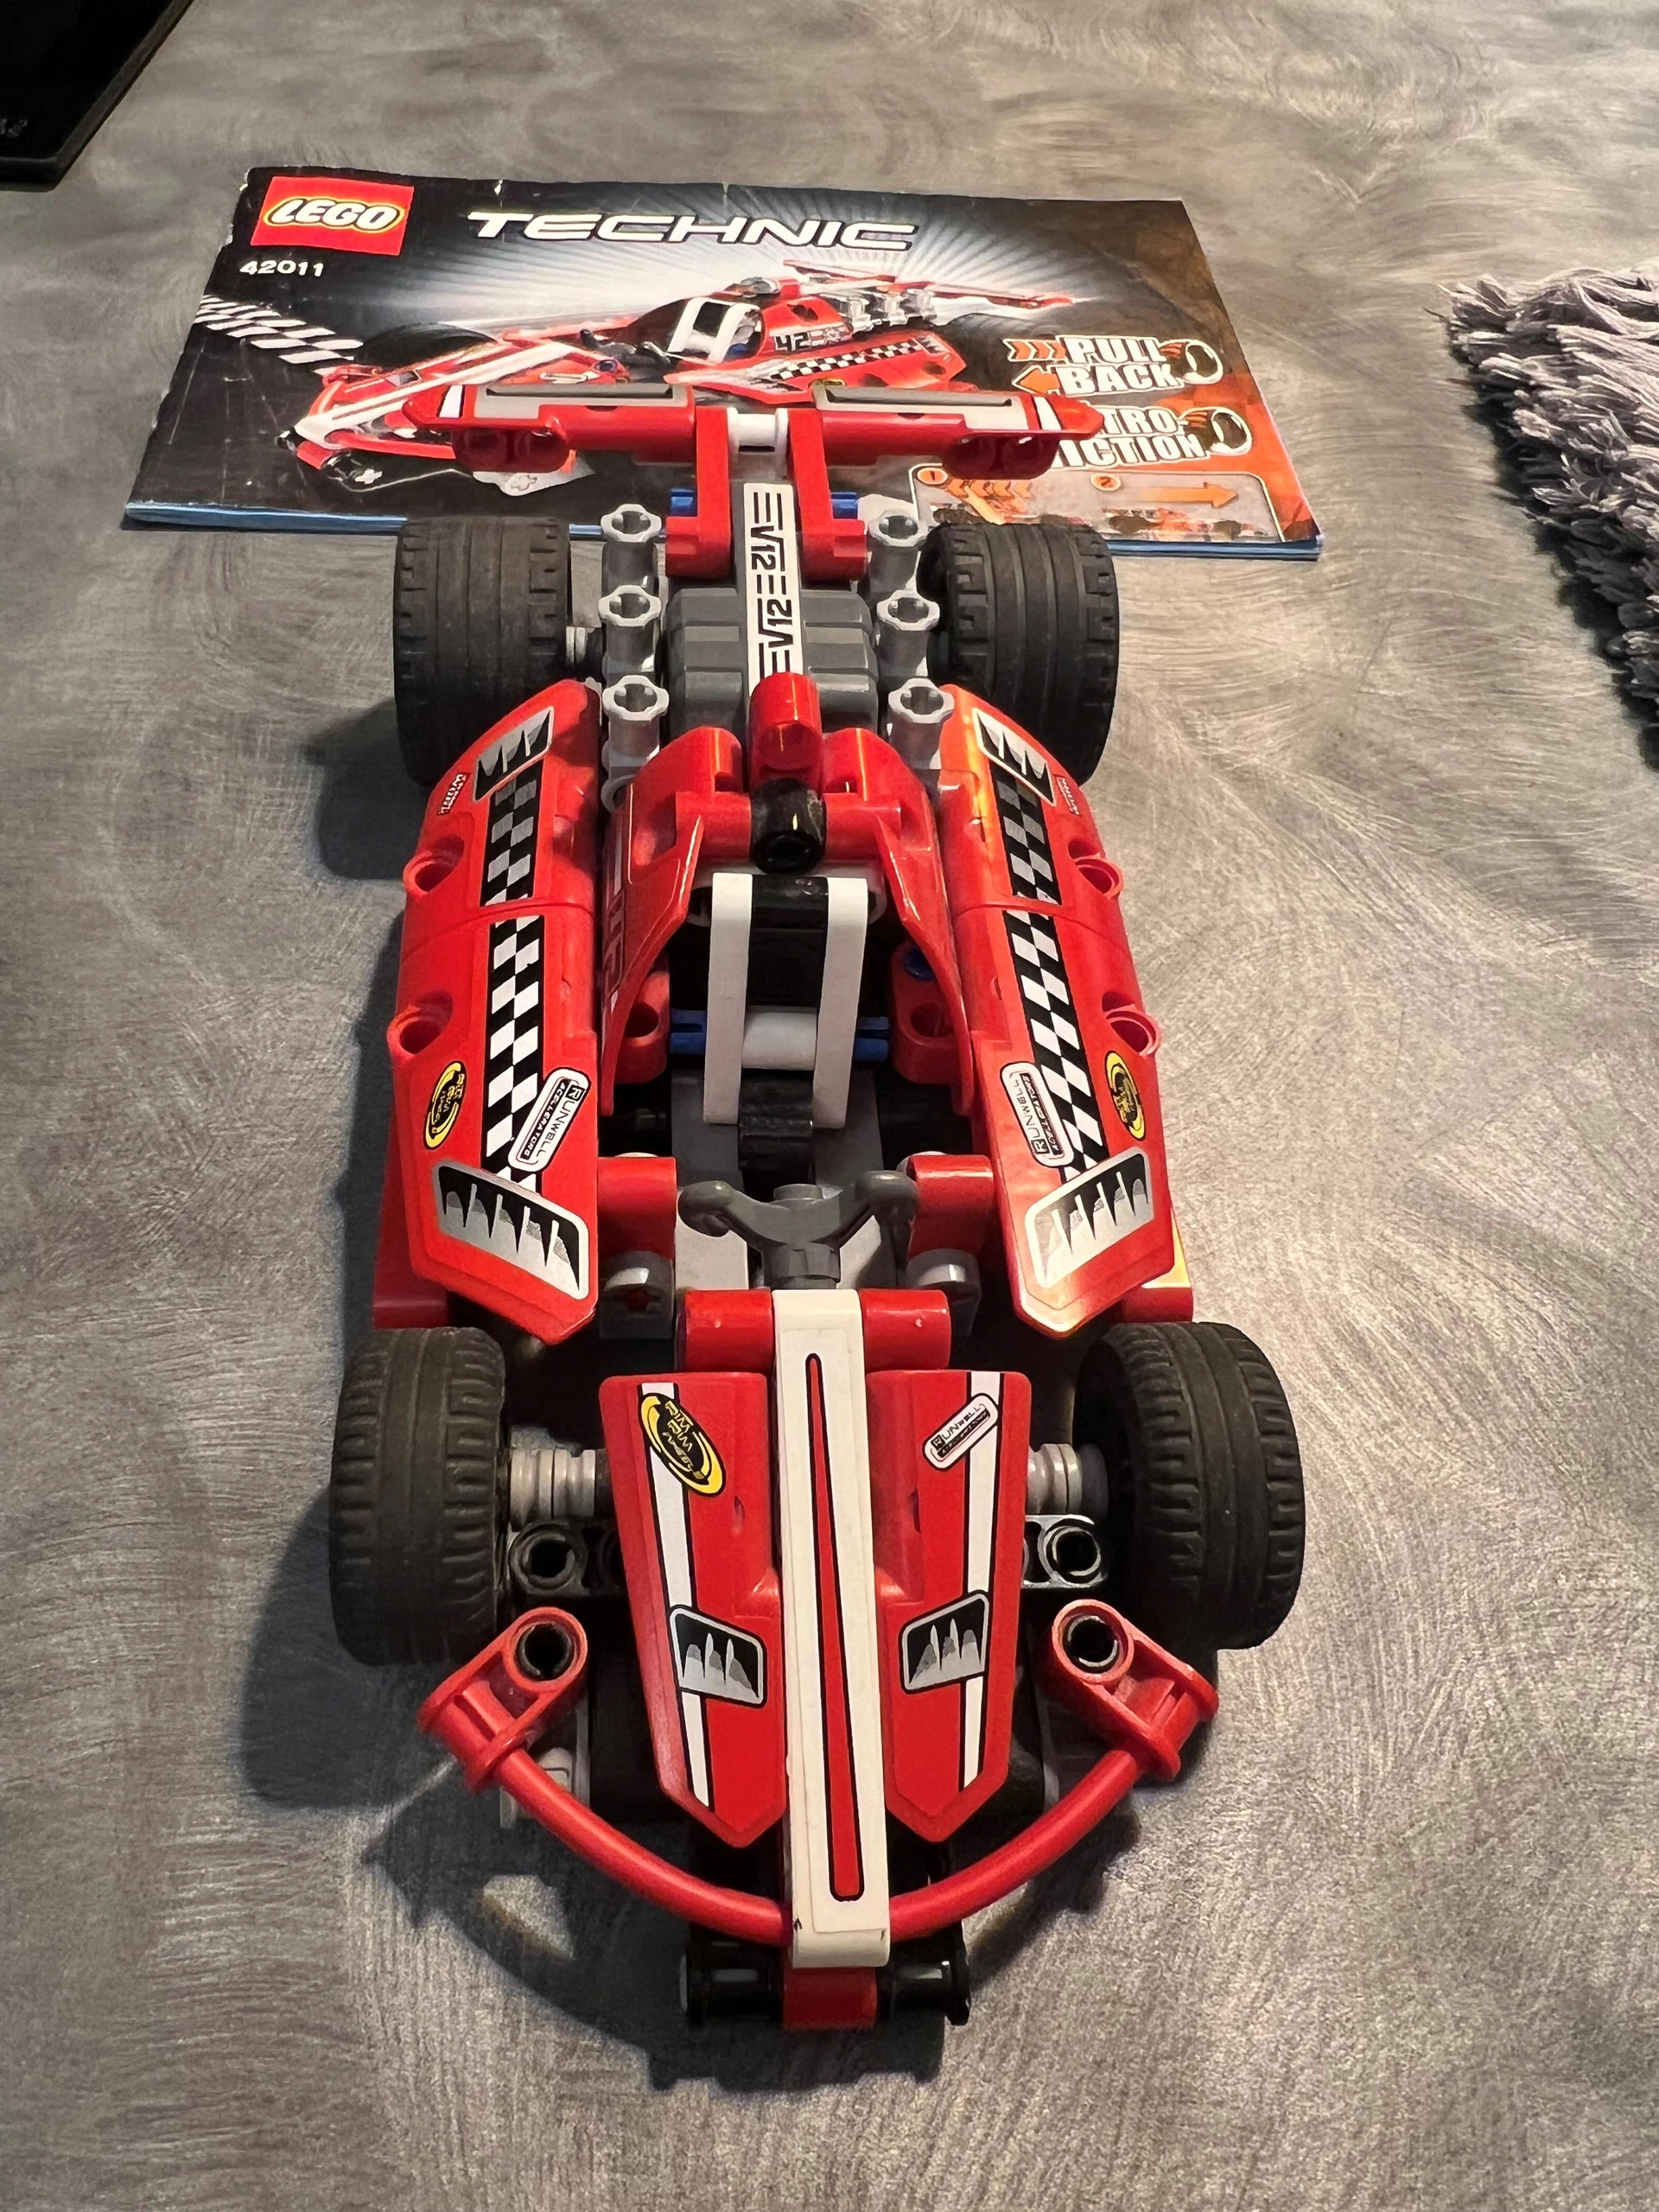  LEGO Technic 42011 Coche de carreras : Juguetes y Juegos